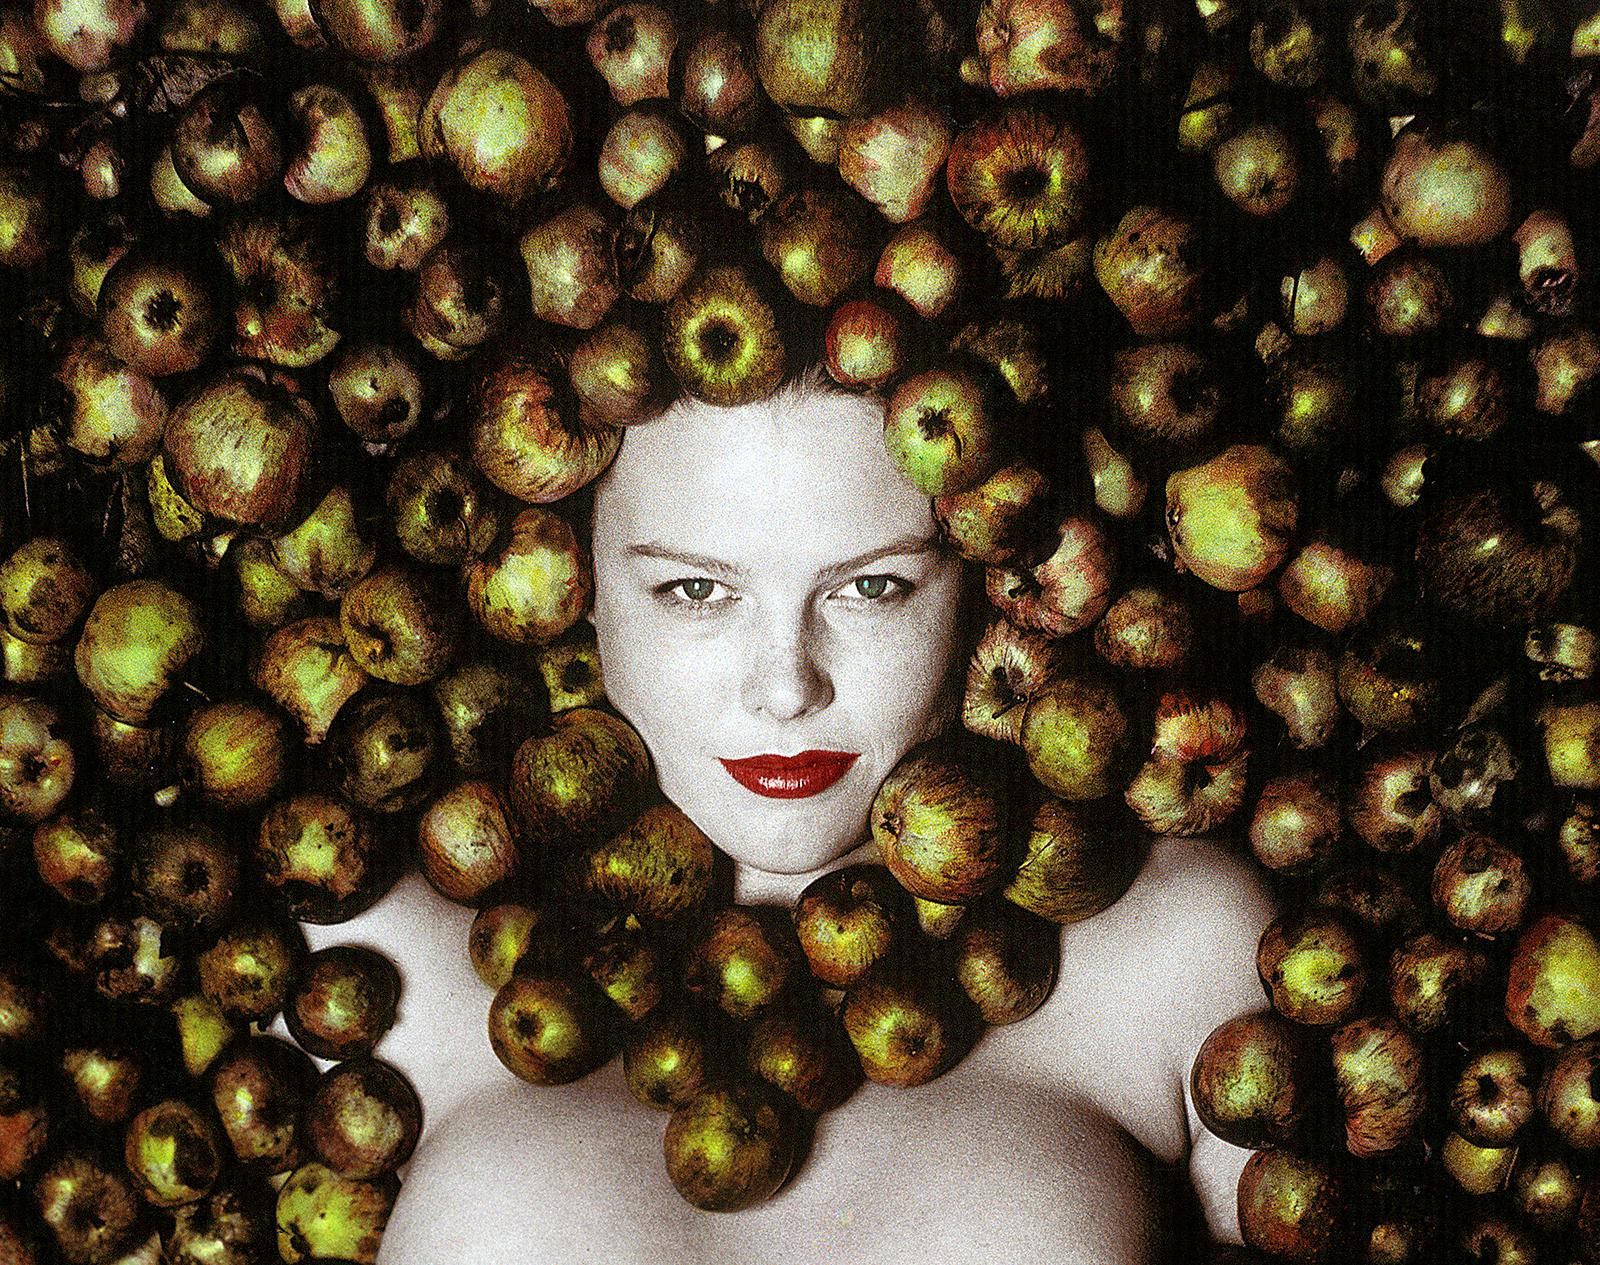 Signierter Kunstdruck in limitierter Auflage, Porträt wie ein Stillleben, Apfel – Photograph von Ian Sanderson